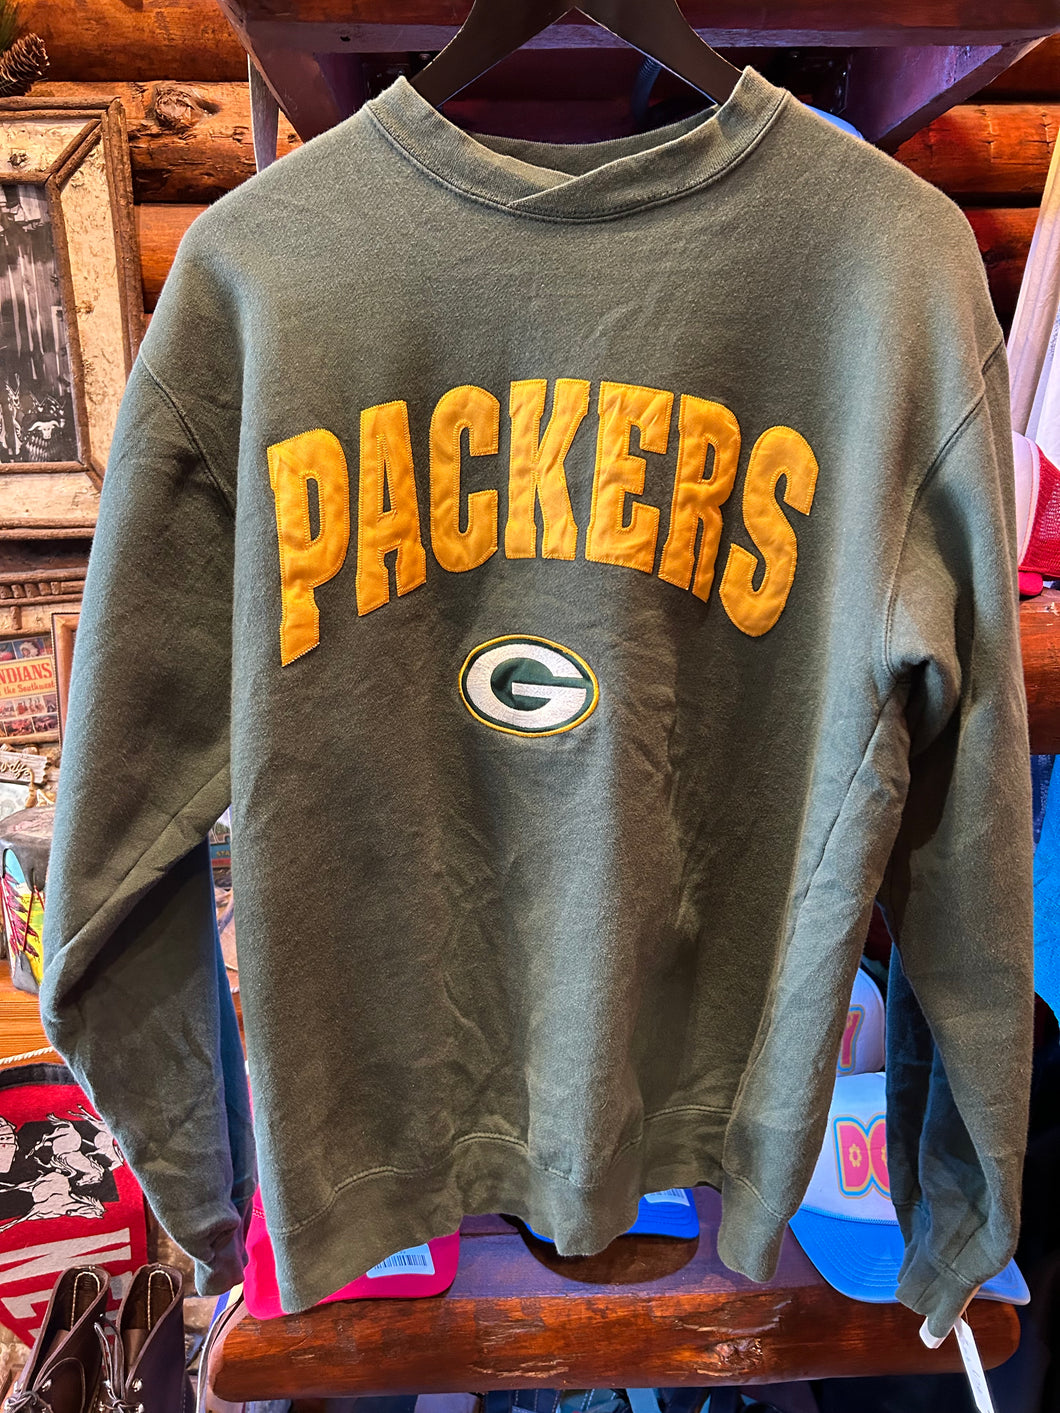 Vintage Packers Sweater, Medium